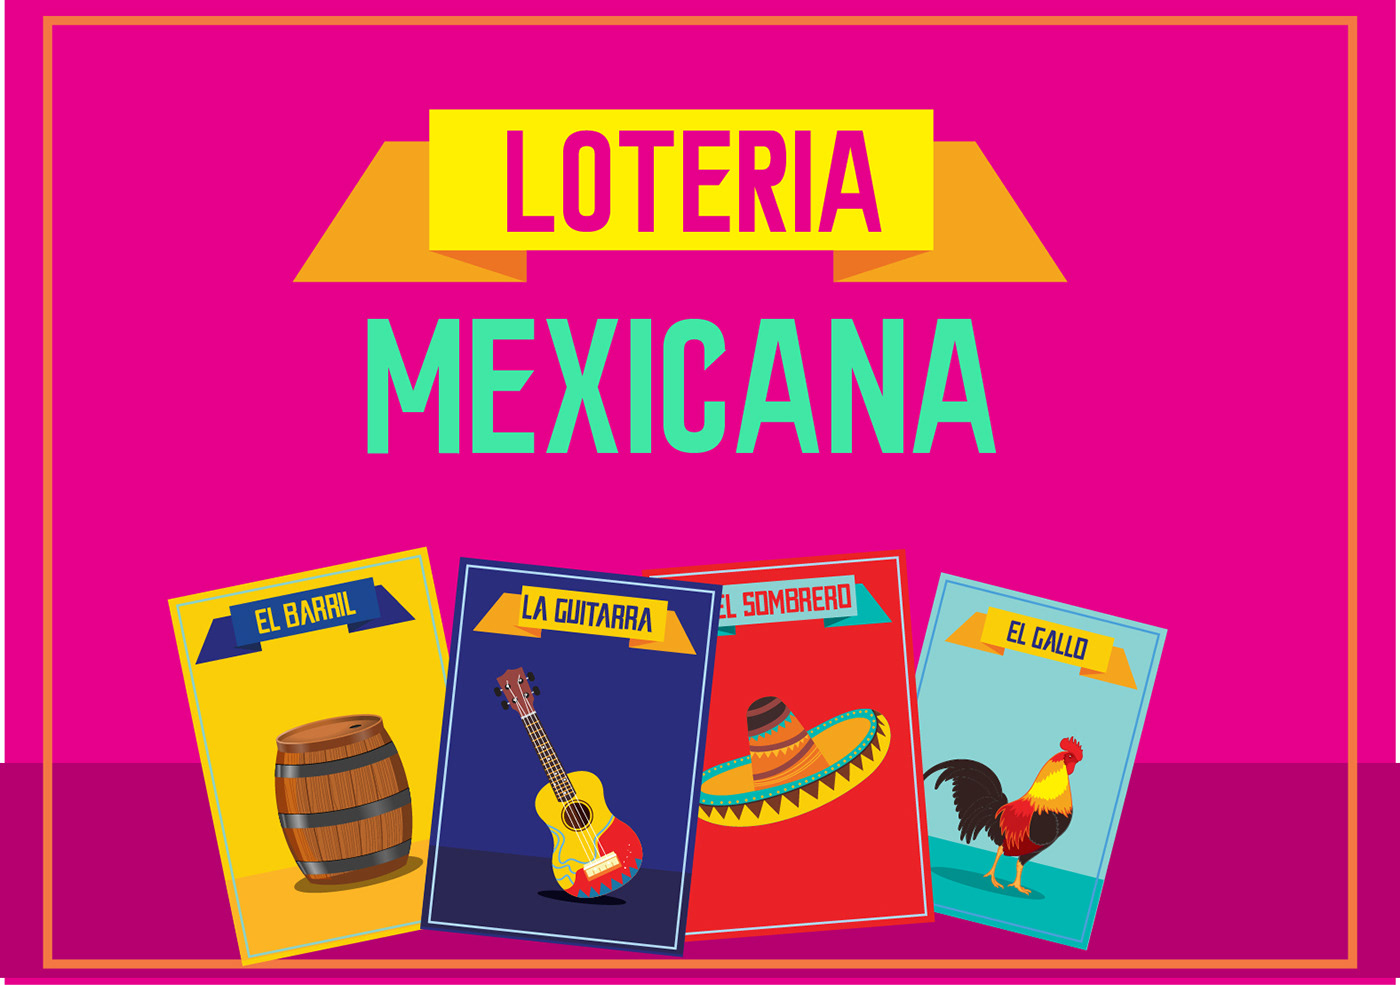 diseño gráfico diseño mexicano ilustracion juguetes juguetes mexicanos loteria Mexican Mexican Design Mexicano mexico